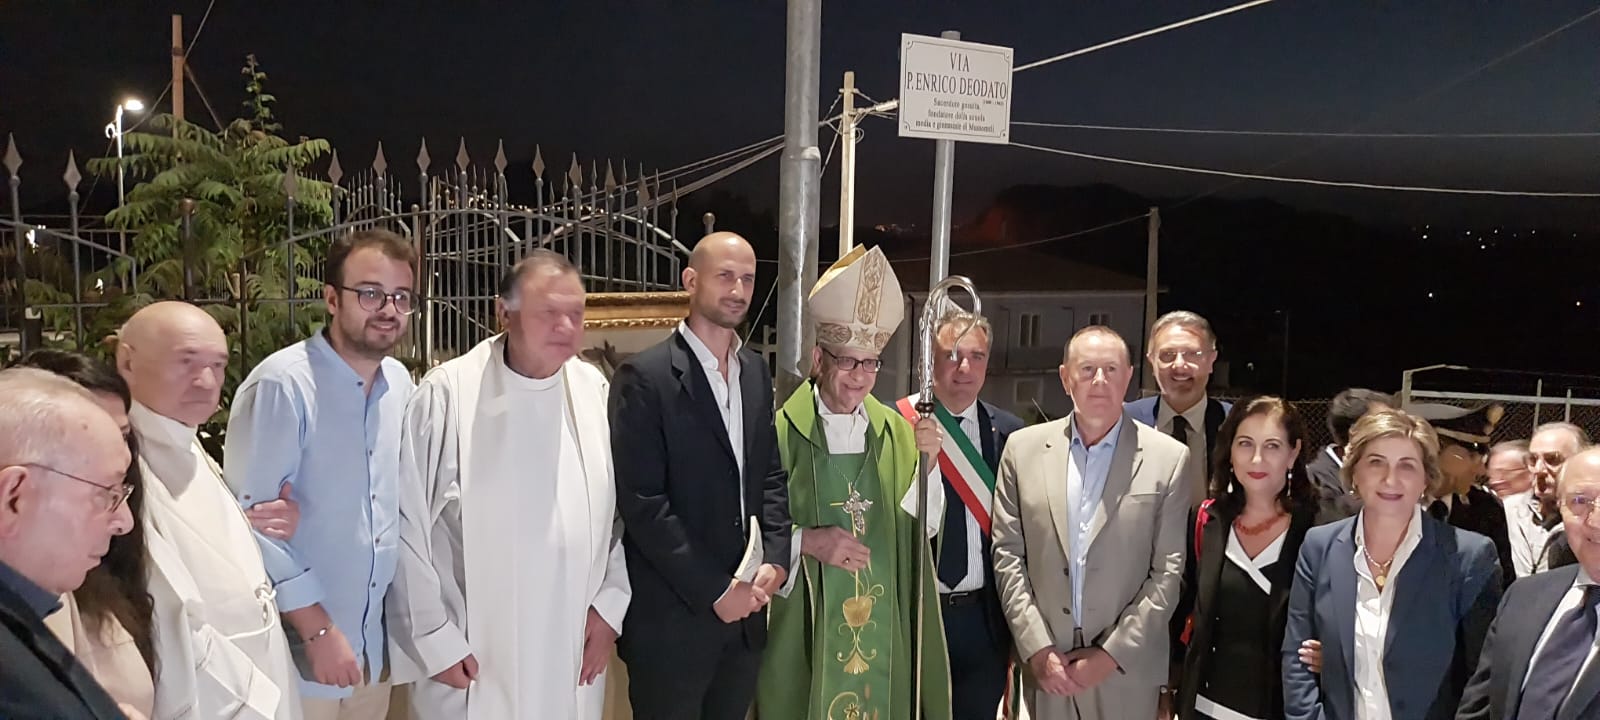 Mussomeli, inaugurata la “Via P. Enrico Deodato”. Presenti il vescovo Russotto e il sindaco Catania. I “santamariisi” esultano.